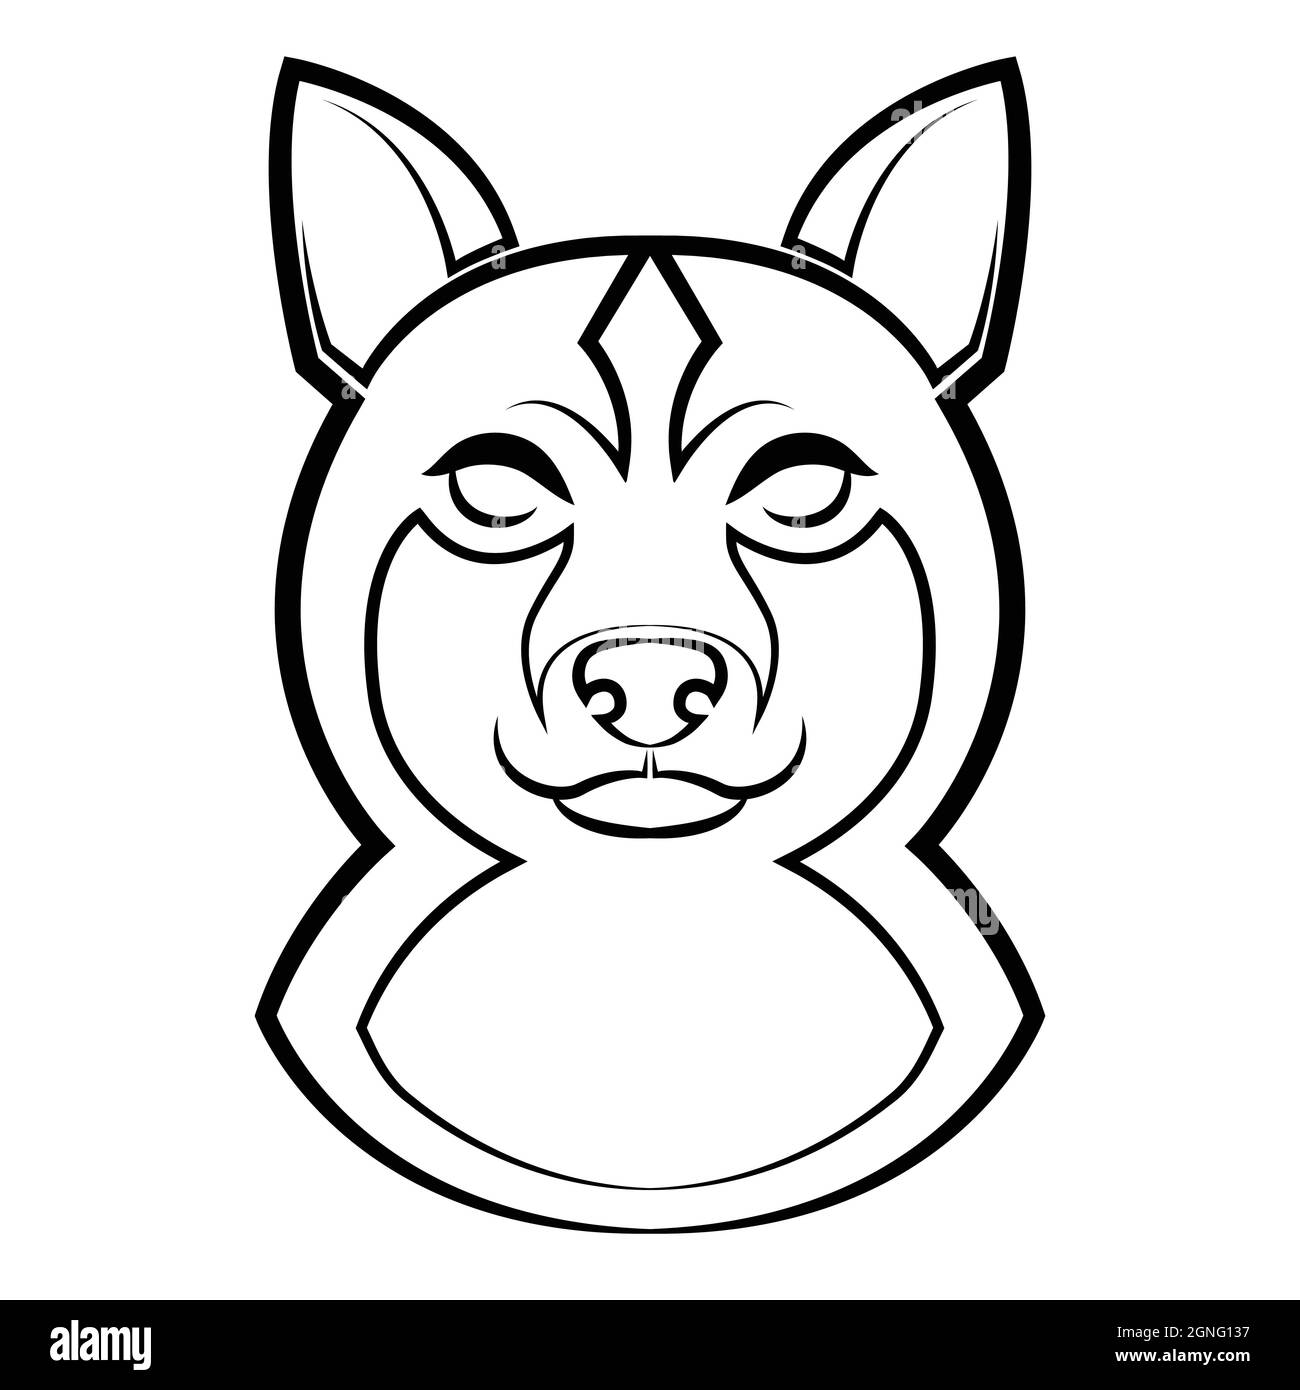 Art de la ligne noire et blanche de la tête de chien shiba. Bon usage pour symbole, mascotte, icône, avatar, tatouage, T-shirt design, logo ou tout autre design. Illustration de Vecteur